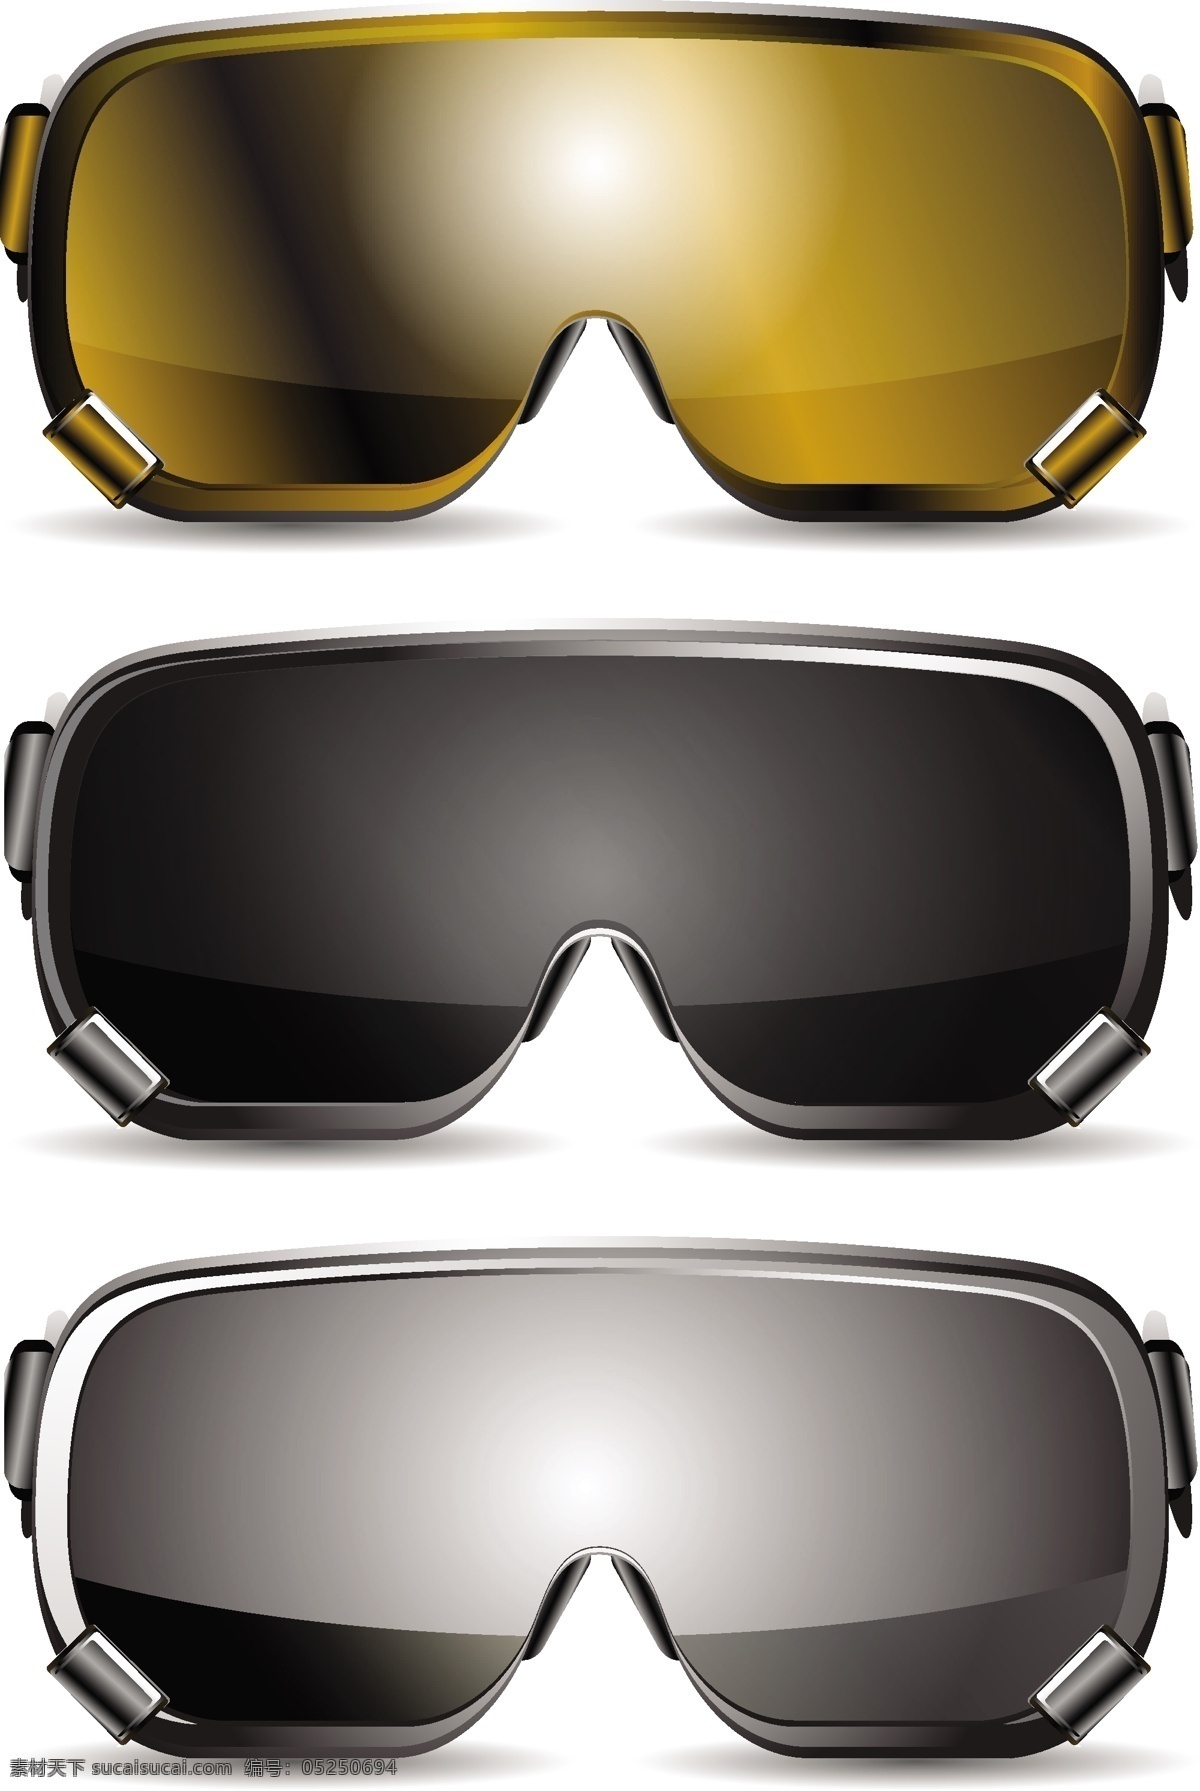 滑雪 眼镜 设计素材 眼镜设计 眼镜素材 矢量眼镜 滑雪眼镜 墨镜 矢量素材 彩色眼镜 生活用品 生活百科 白色